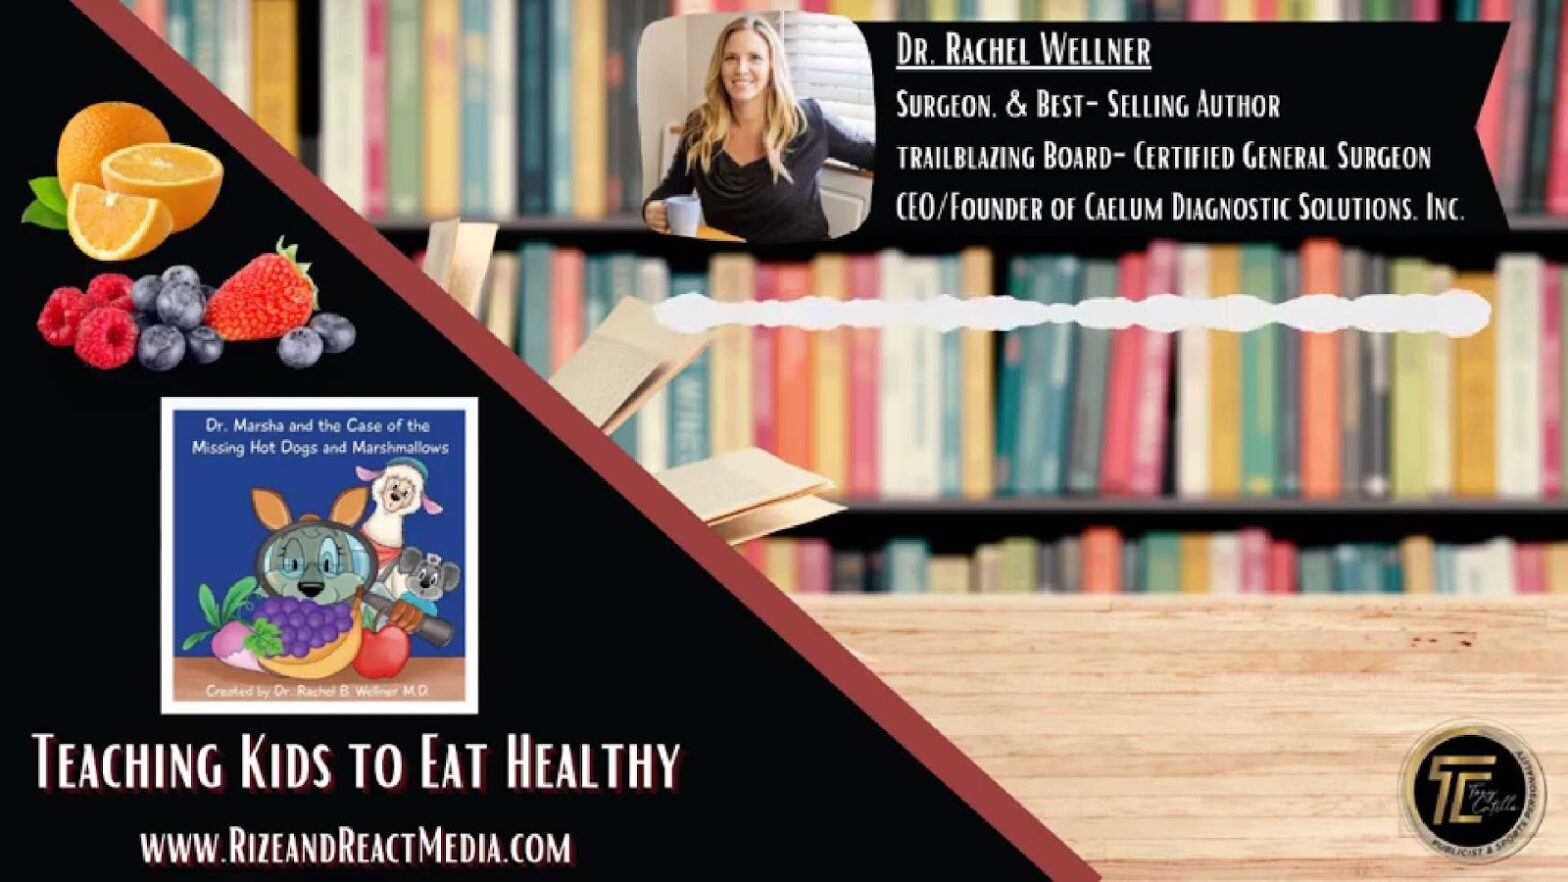 Rachel Wellner and her book "Doctor Marsha"